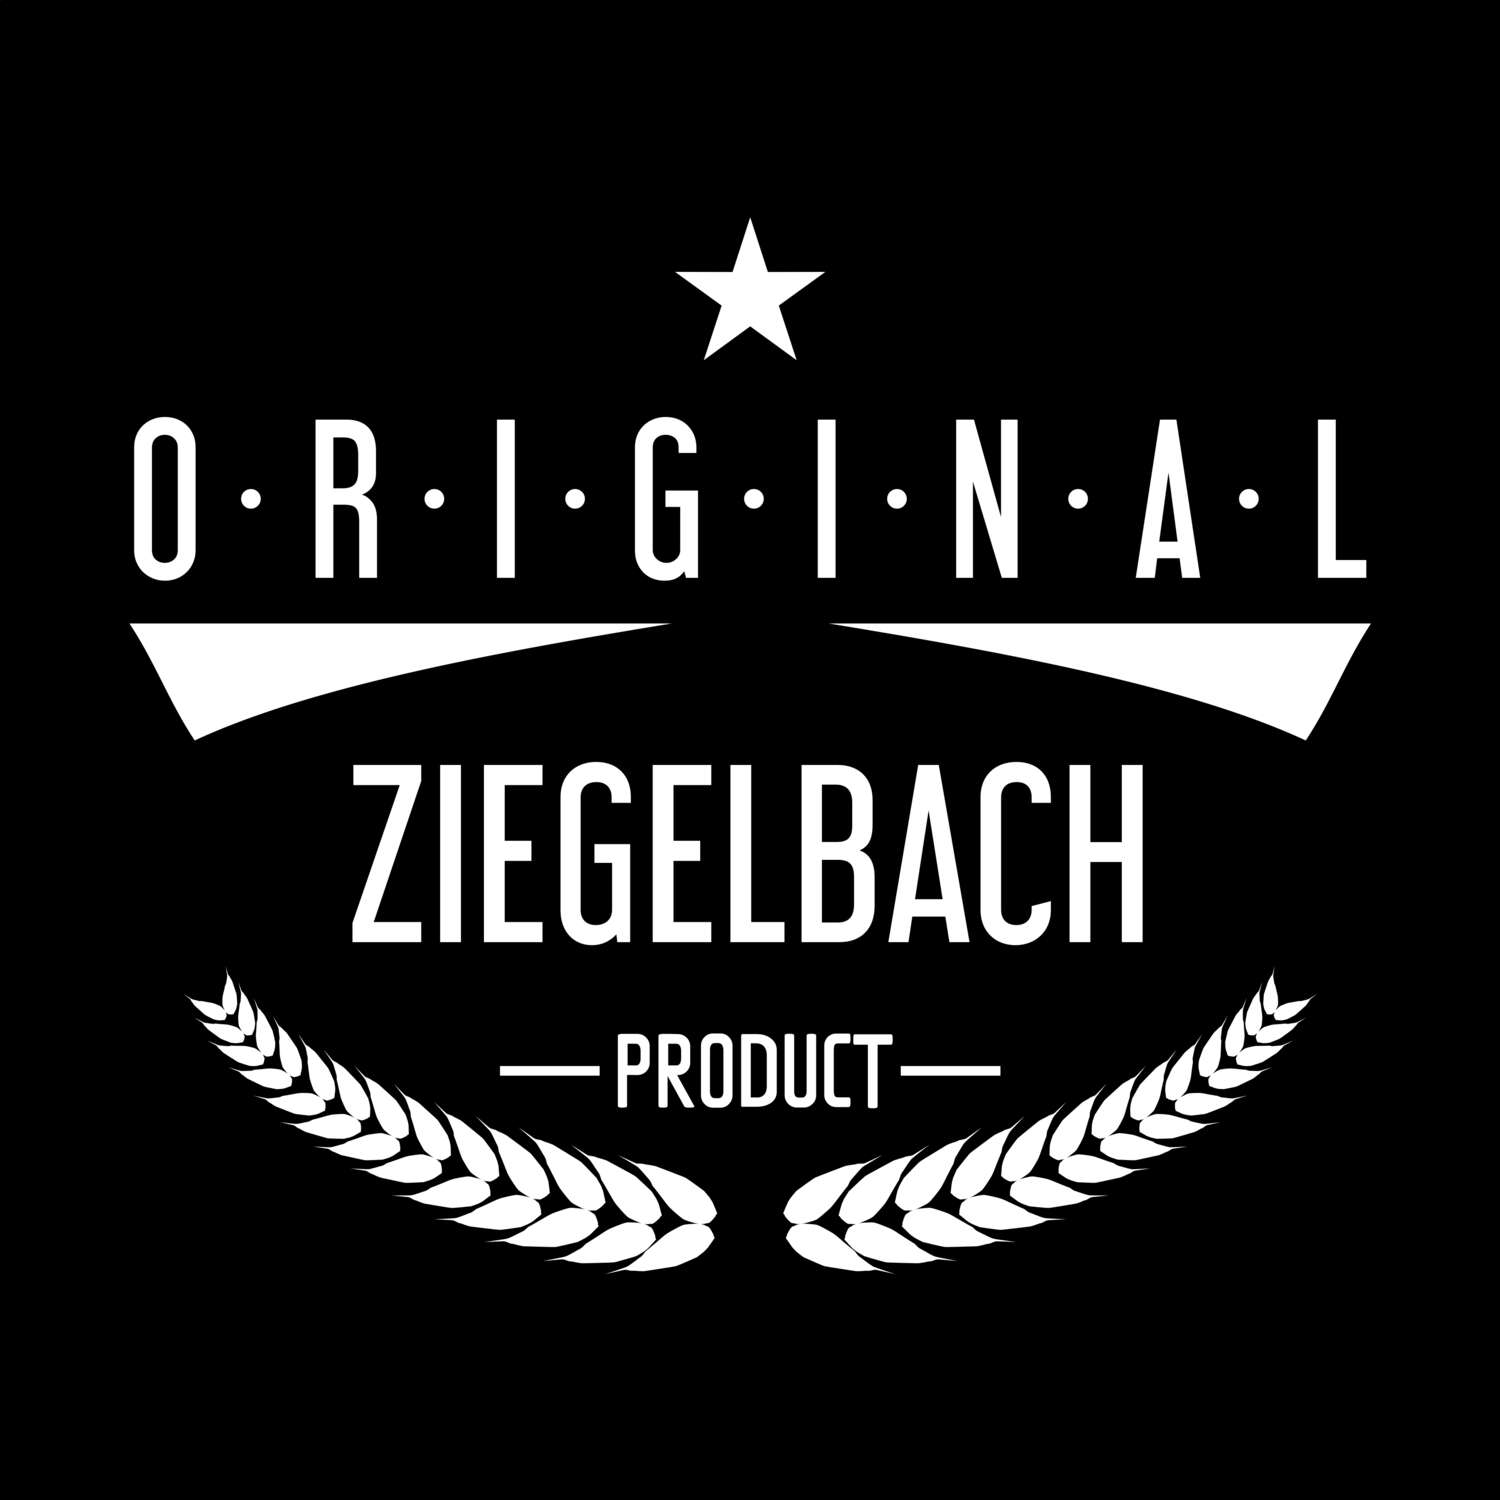 Ziegelbach T-Shirt »Original Product«